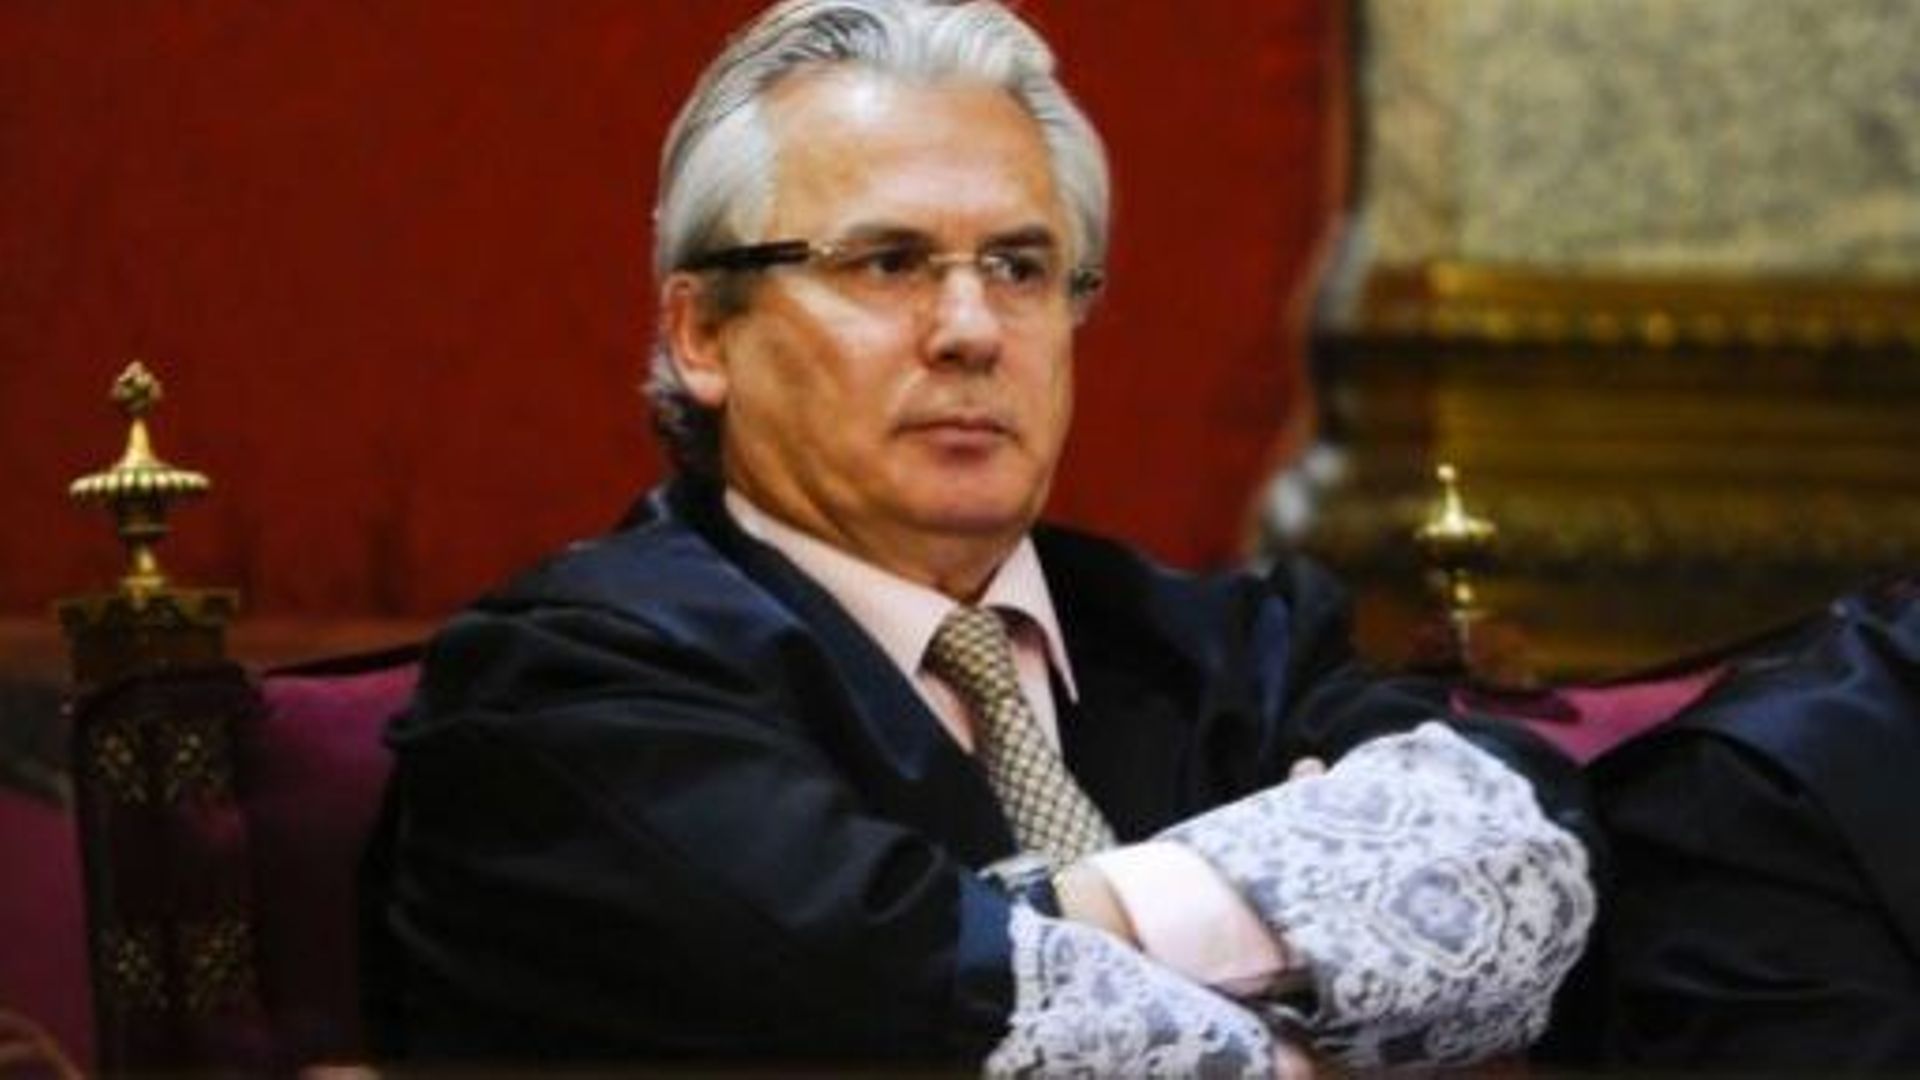 Franquisme: le tribunal refuse de classer le procès du juge Baltasar Garzon